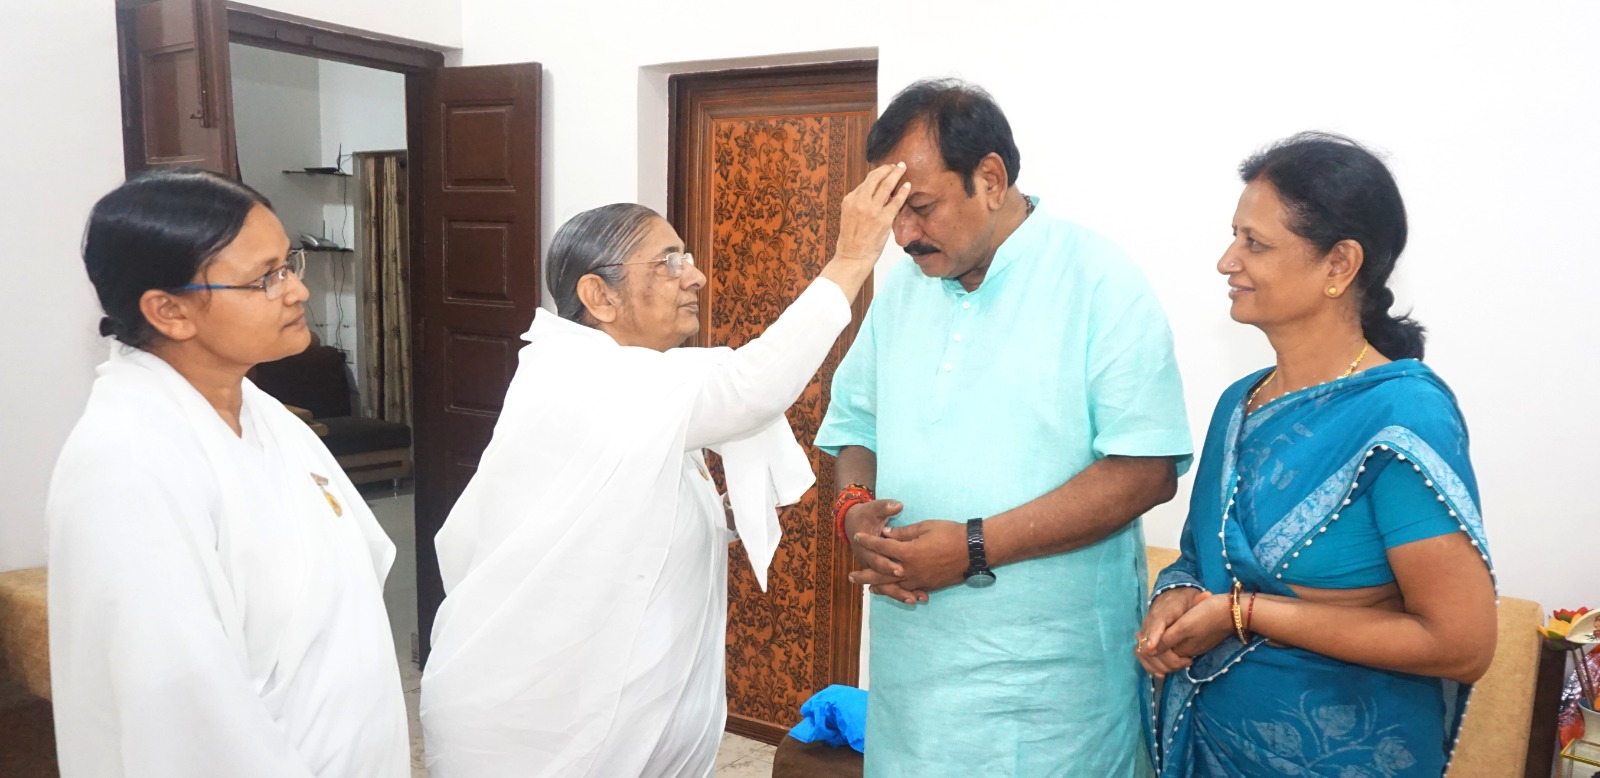 लोक सभा चुनाव में बड़ी जीत के लिए आशा दीदी ने विजय बघेल को तिलक लगाकर हार्दिक बधाई शुभकामनाएं दी।